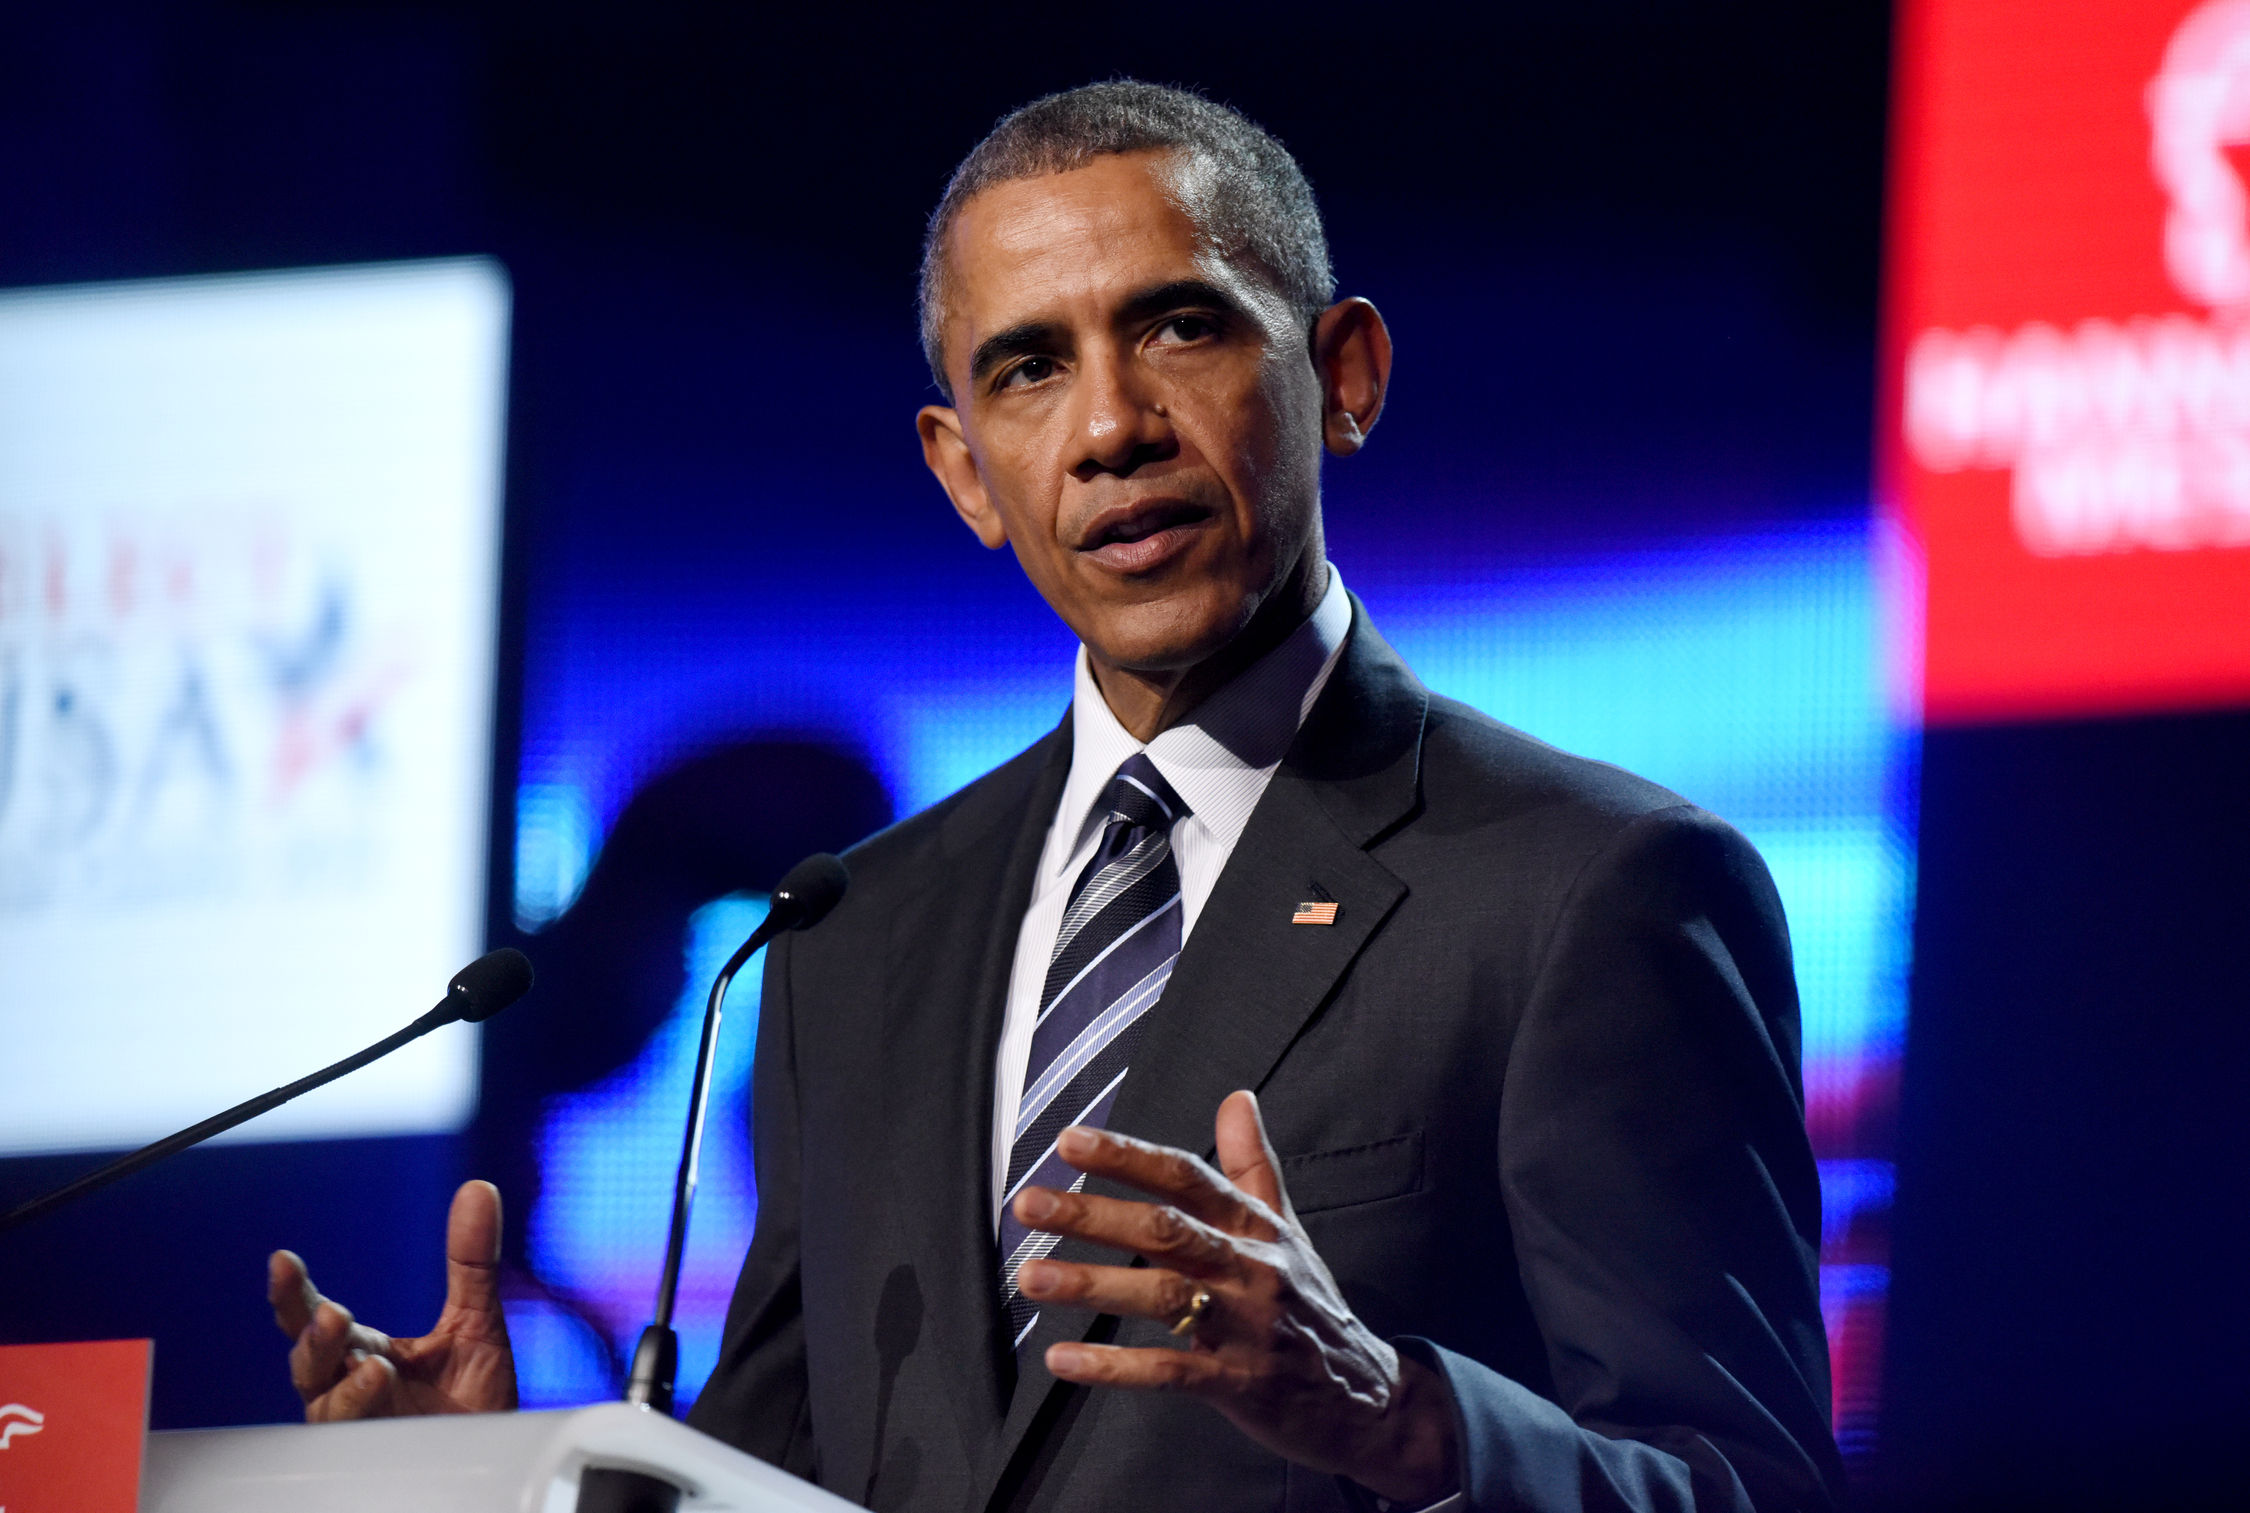 Ihm schlägt Skepsis entgegen: US-Präsident Obama auf der Eröffnungsfeier der HANNOVER MESSE am 24. April 2015 im Hannover Congress Centrum. Foto: Hannover Messe